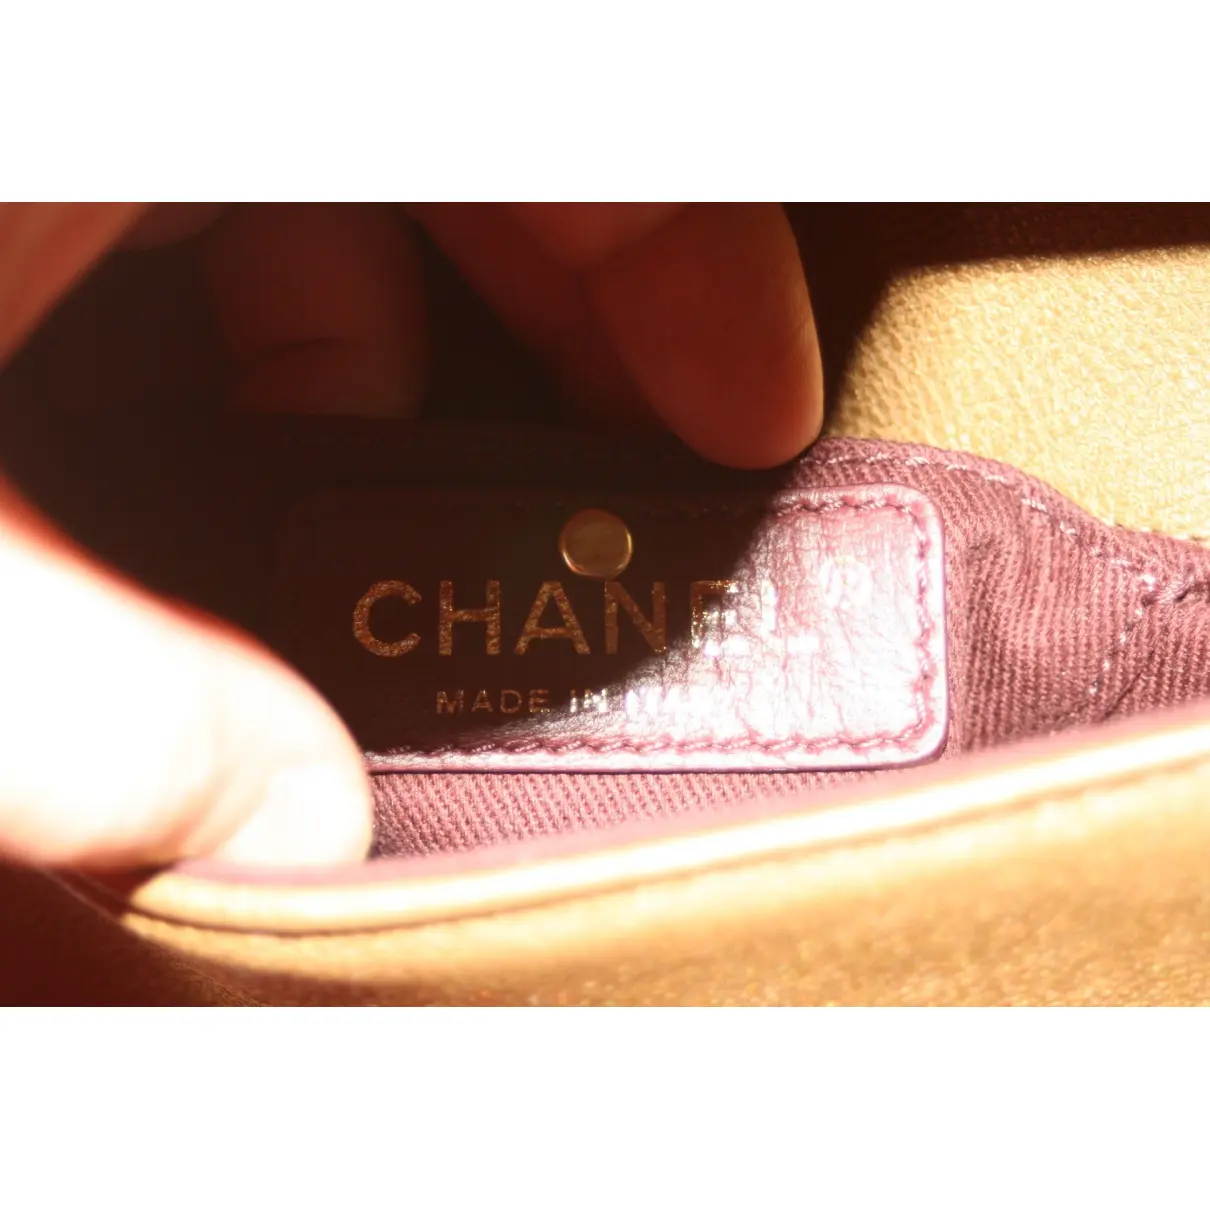 Business Affinity leather handbag Chanel - Vintage